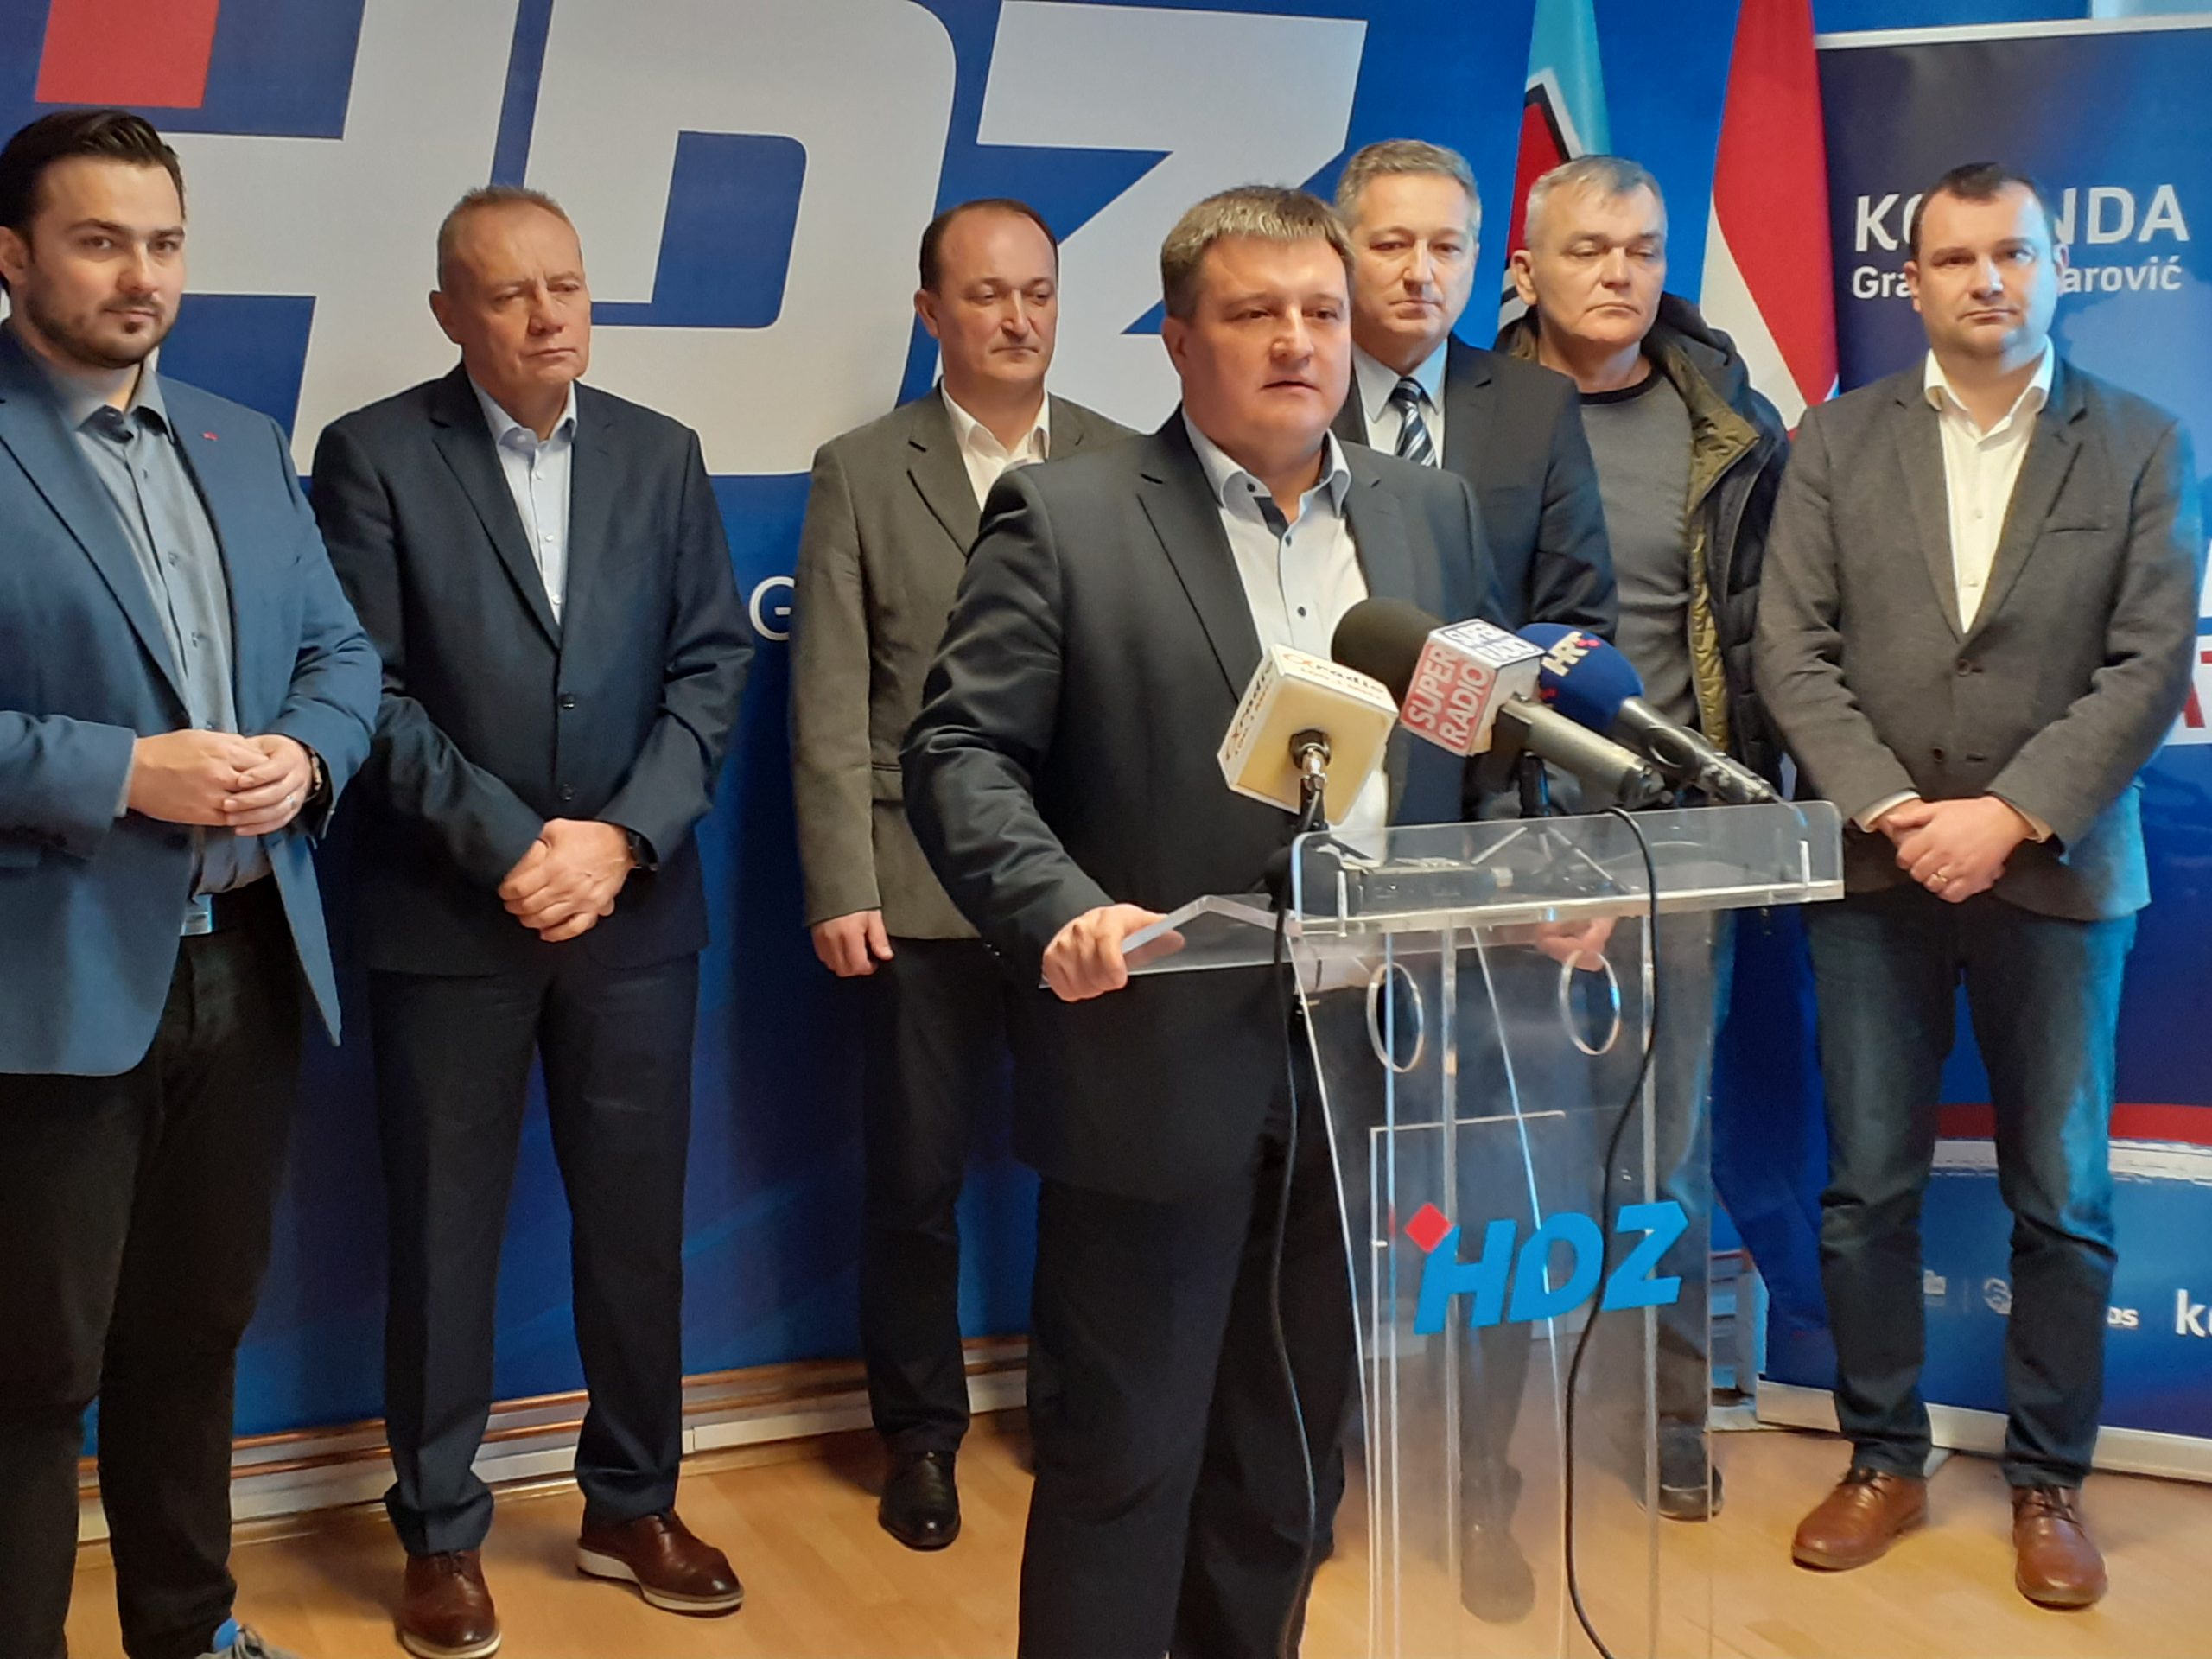 HDZ ANALIZIRA Zašto je Grabar-Kitarović izgubila u BBŽ i Bjelovaru